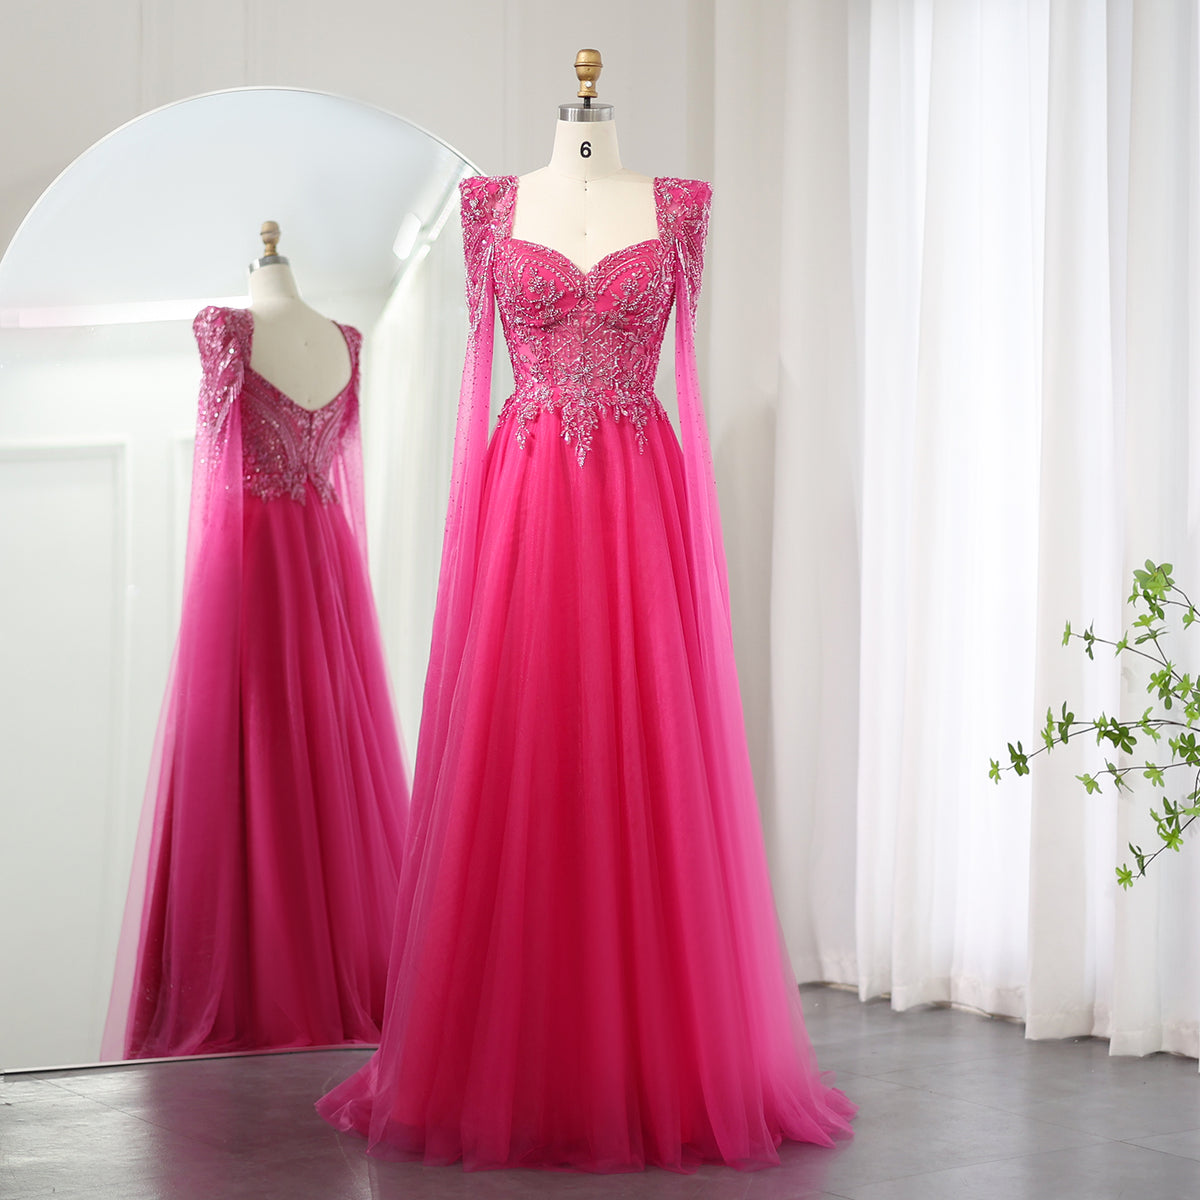 Sharon Said Arabisches Fuchsia Abendkleid mit Cape-Ärmeln Luxus Perlen Dubai Elegante Frauen Hochzeit Formale Party Kleider SS242